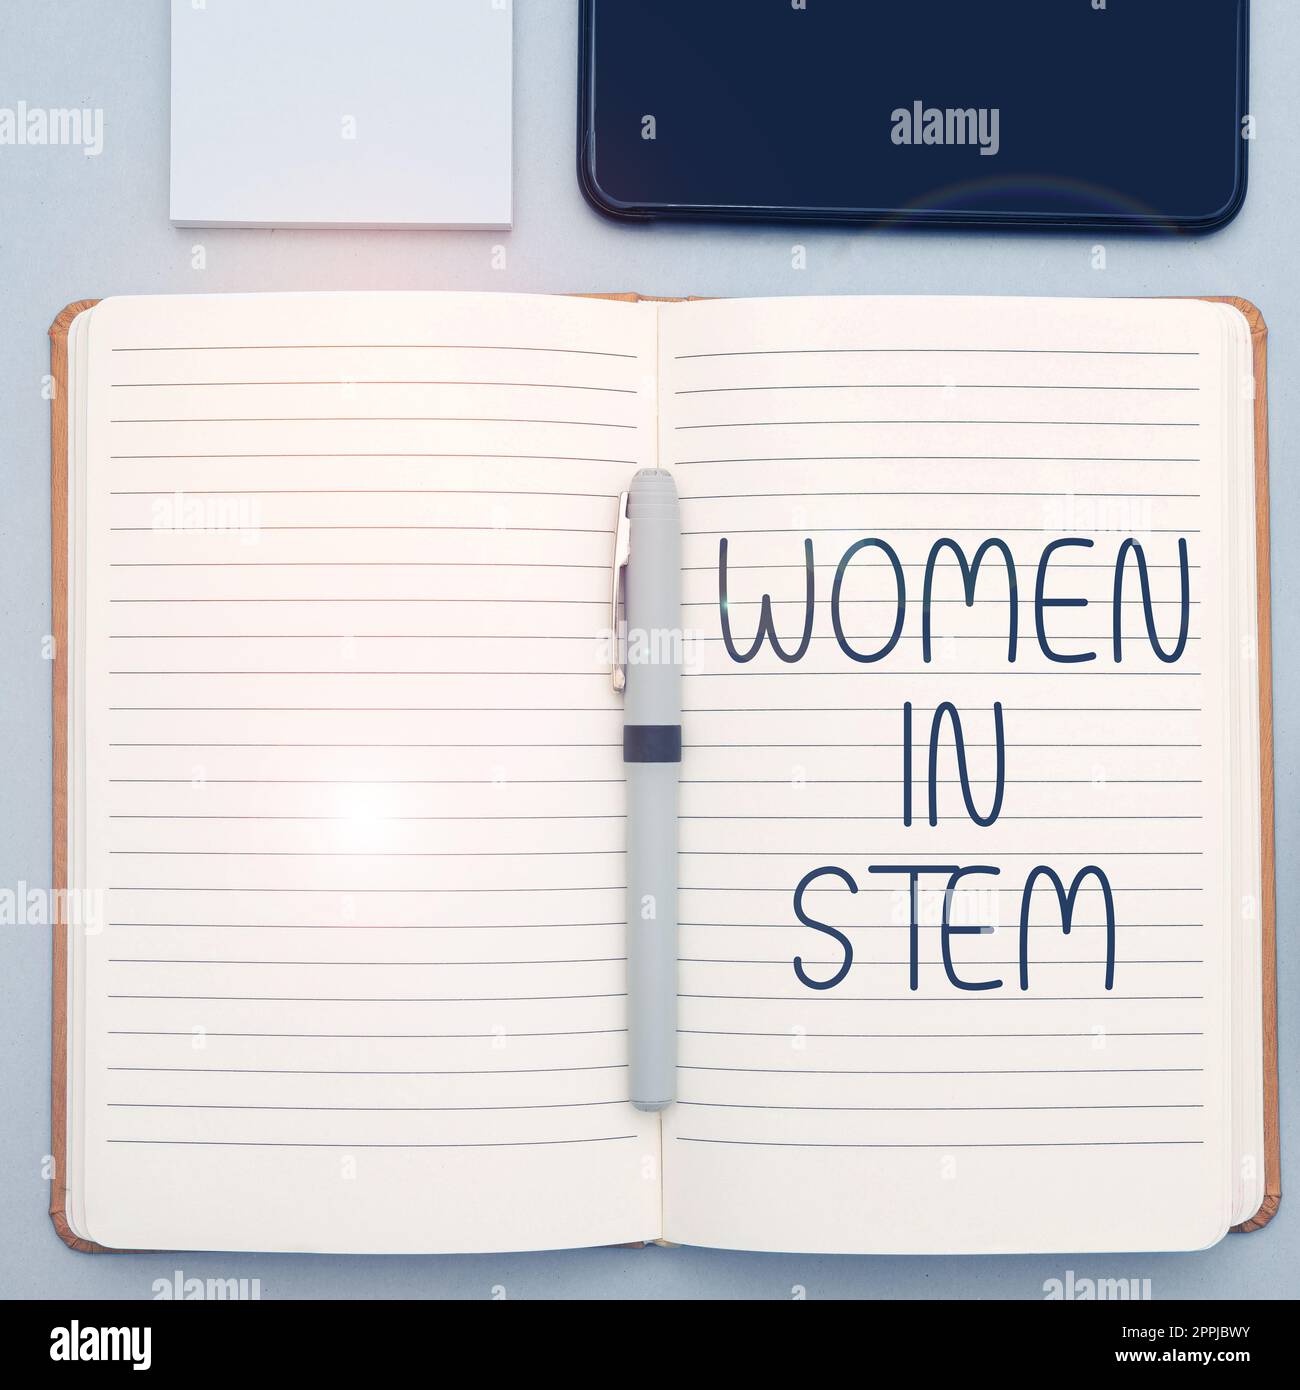 Texte d'écriture femmes dans Stem. Concept Internet Science technologie Ingénierie mathématiques scientifique recherche Banque D'Images